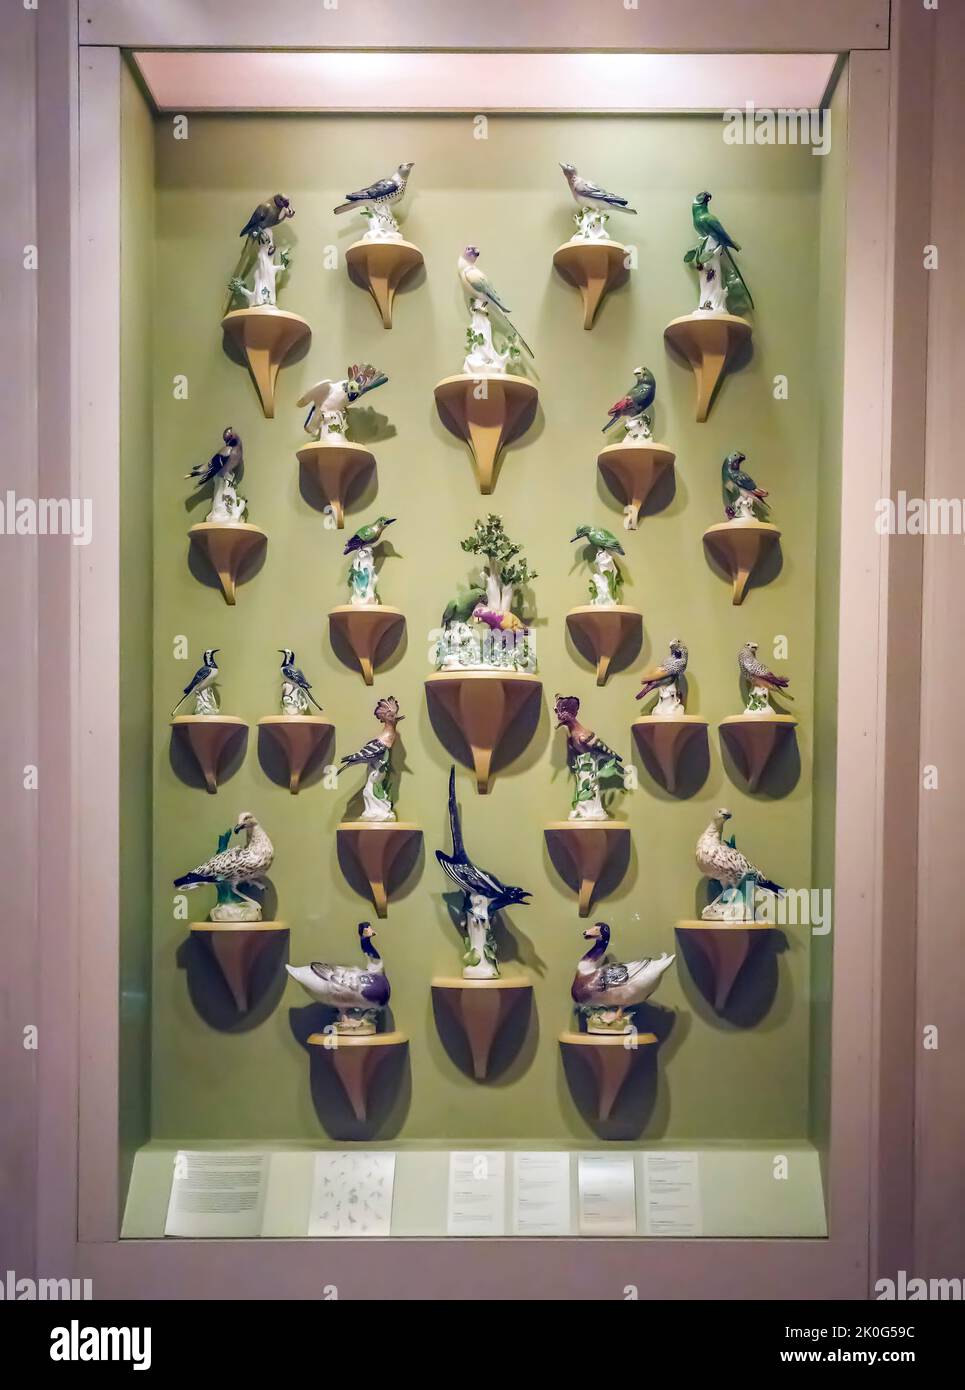 Porcelein oiseaux par la manufacture Meissen exposés dans le Metropolitan Museum of Art (MET) Manhattan, NYC, Etats-Unis Banque D'Images